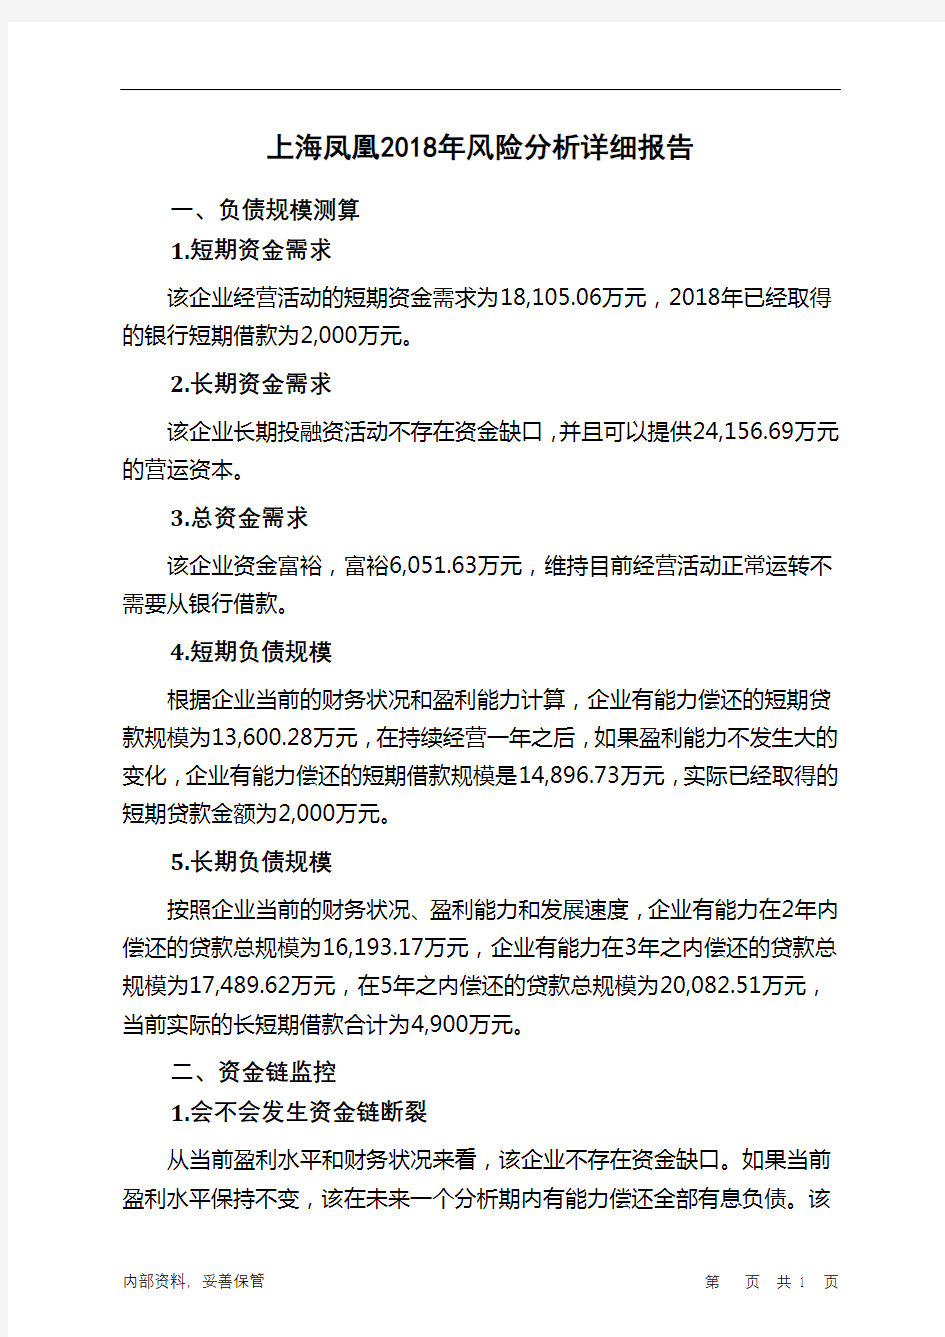 上海凤凰2018年财务风险分析详细报告